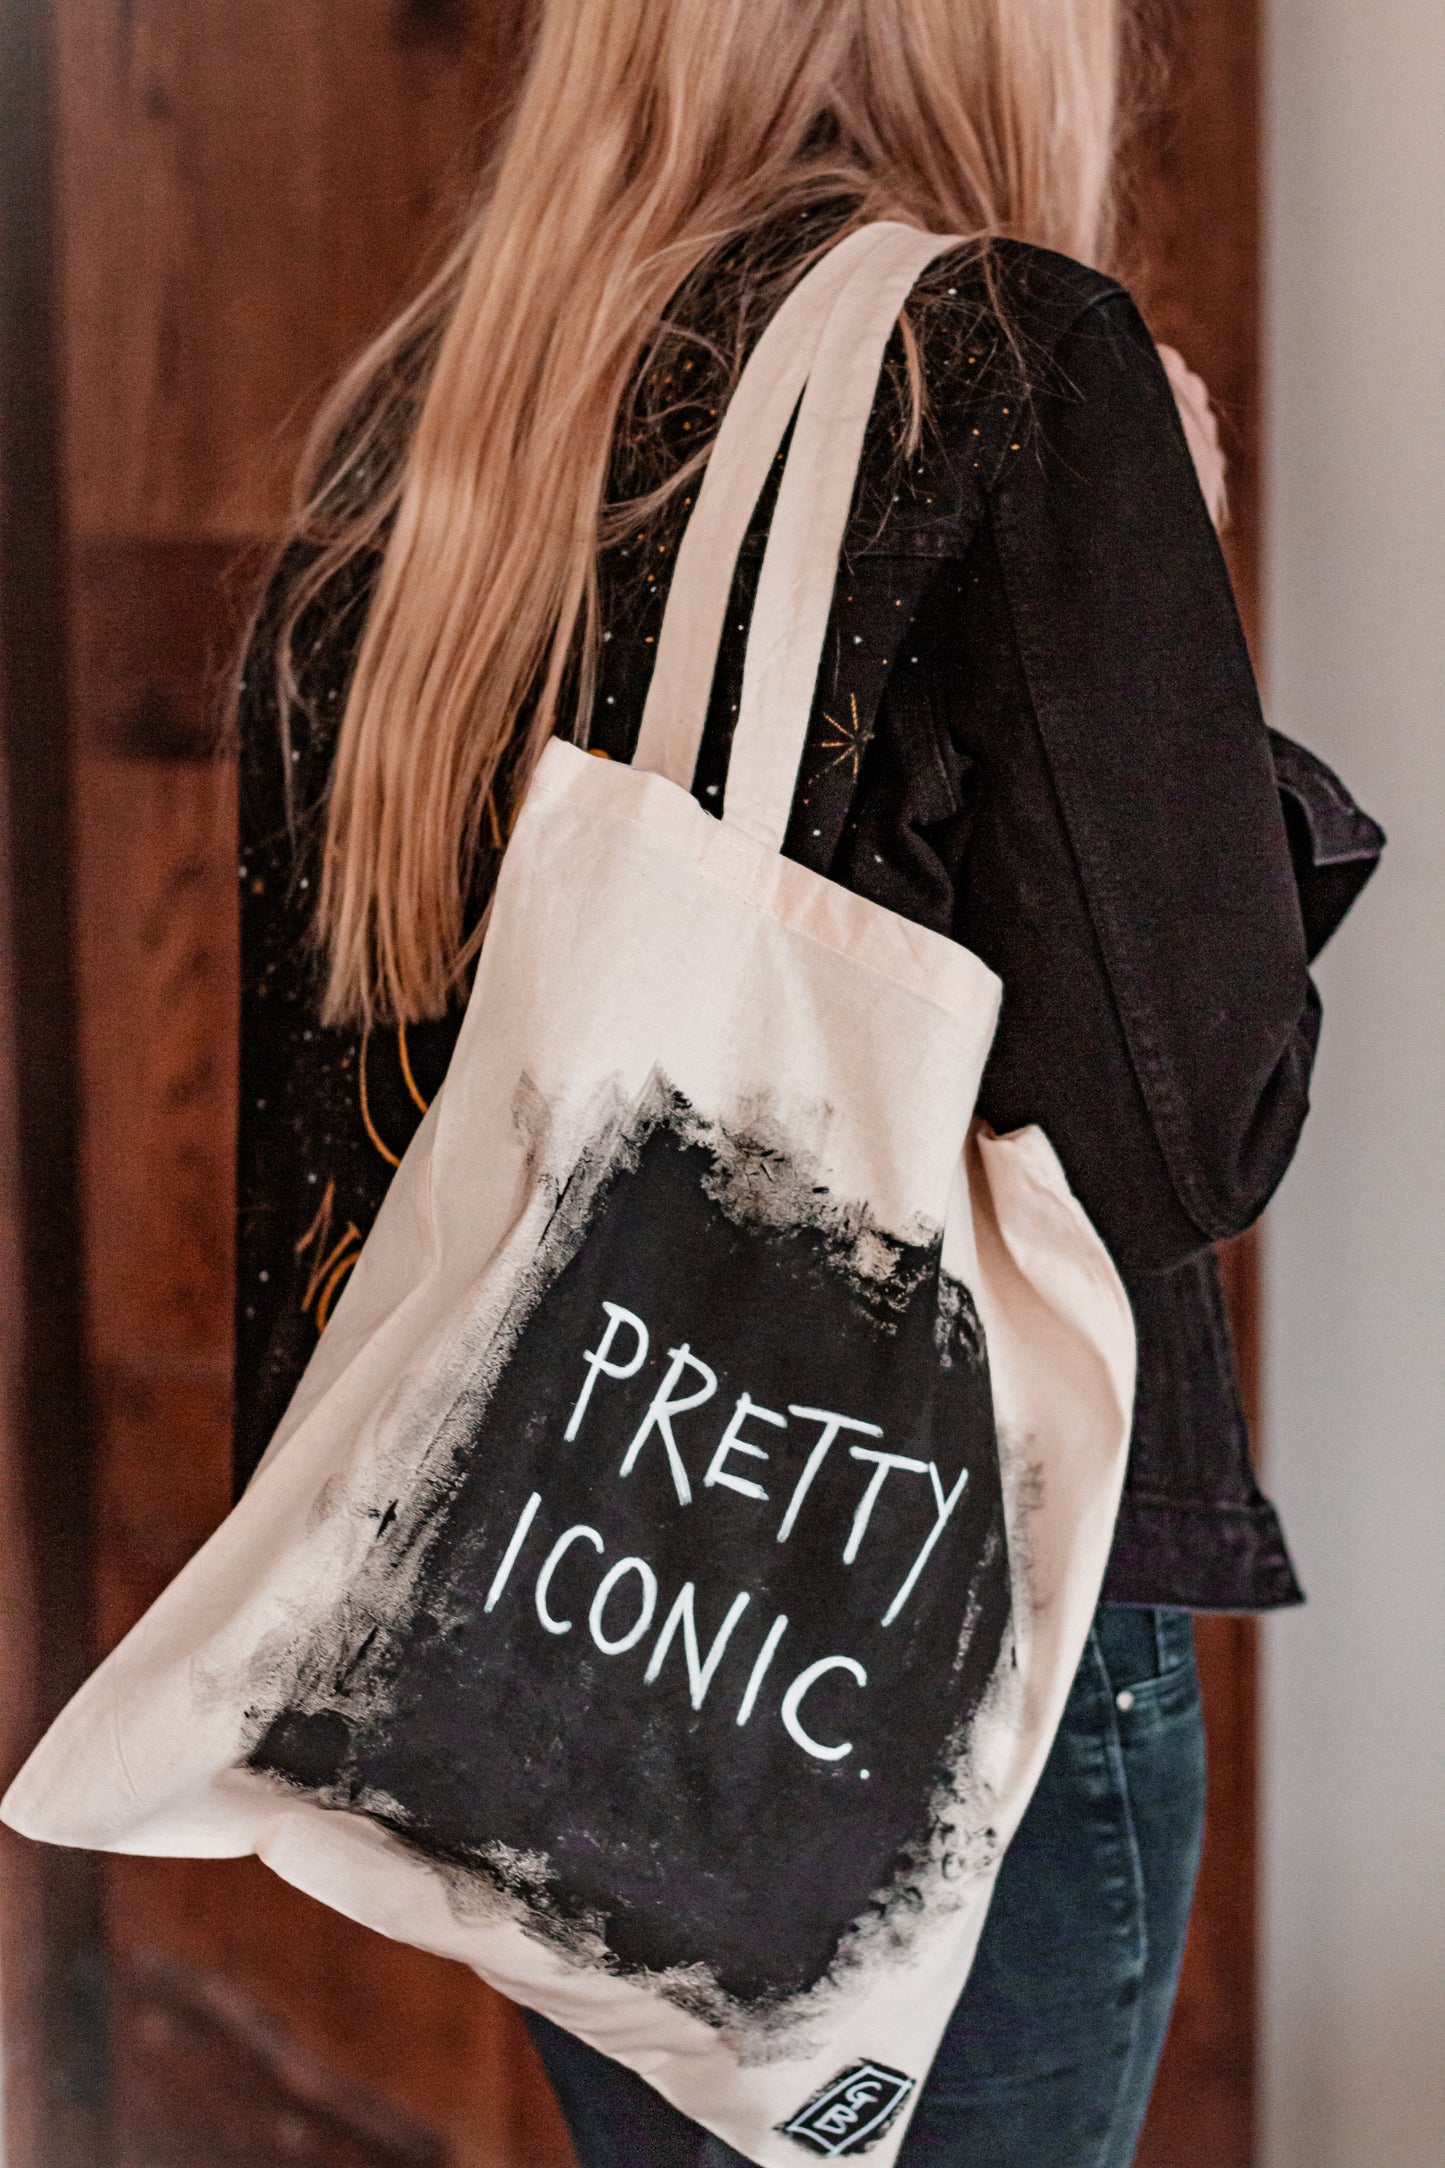 ‘Pretty iconic’ cotton tote bag